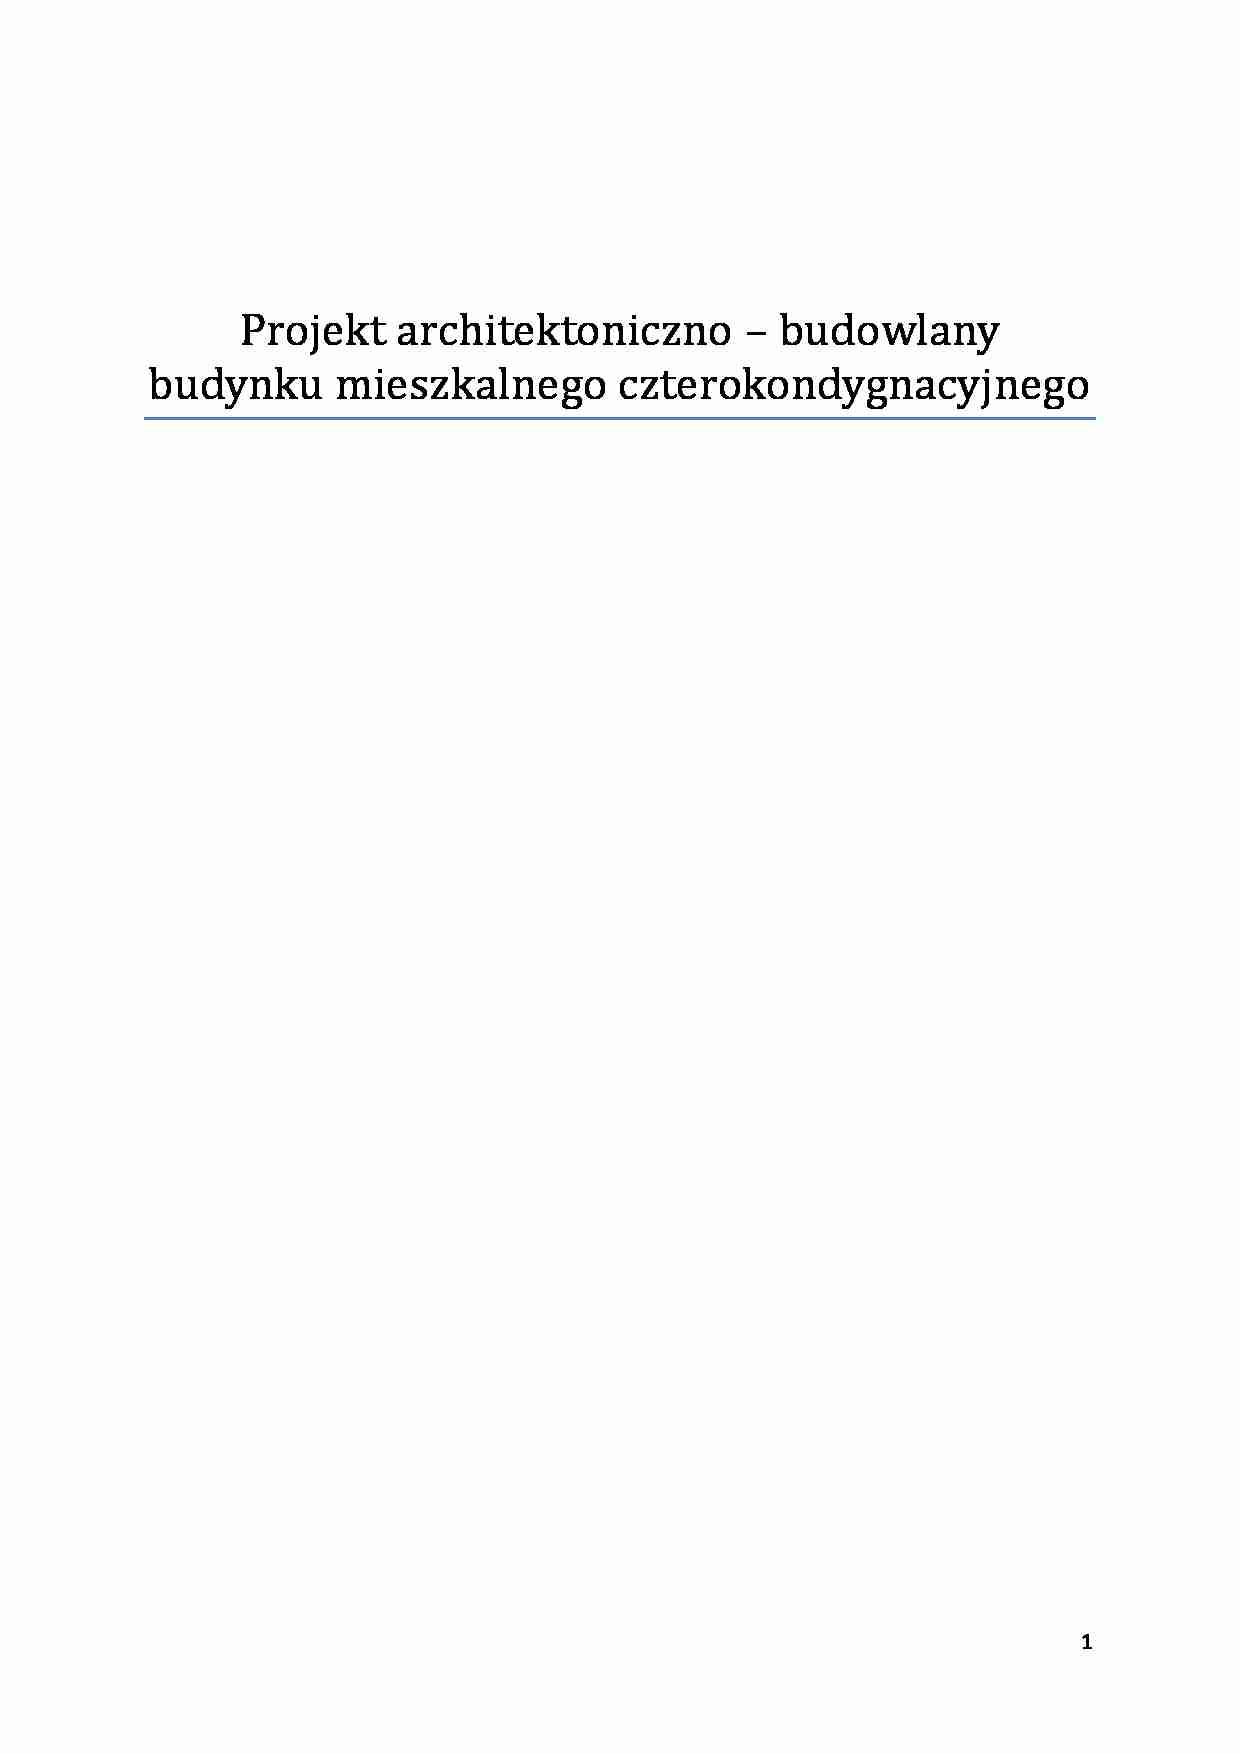 Projekt architektoniczno - budowlany budynku mieszkalnego czterokondygnacyjnego - strona 1